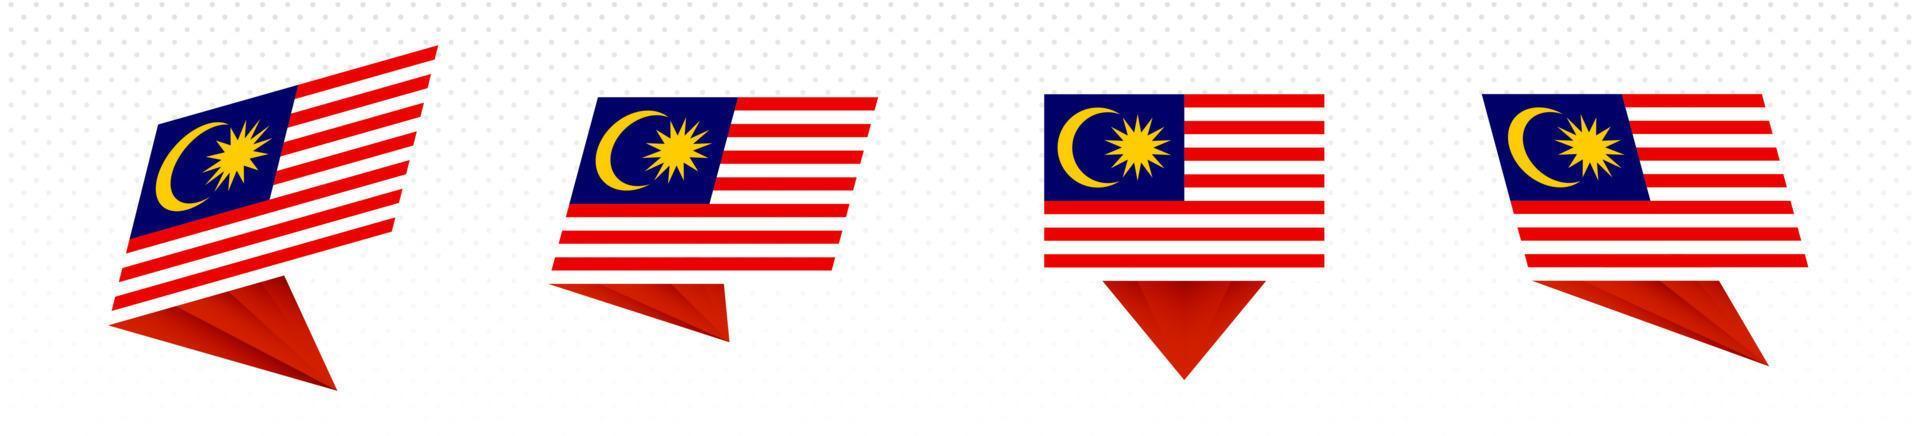 bandera de malasia en diseño abstracto moderno, juego de banderas. vector